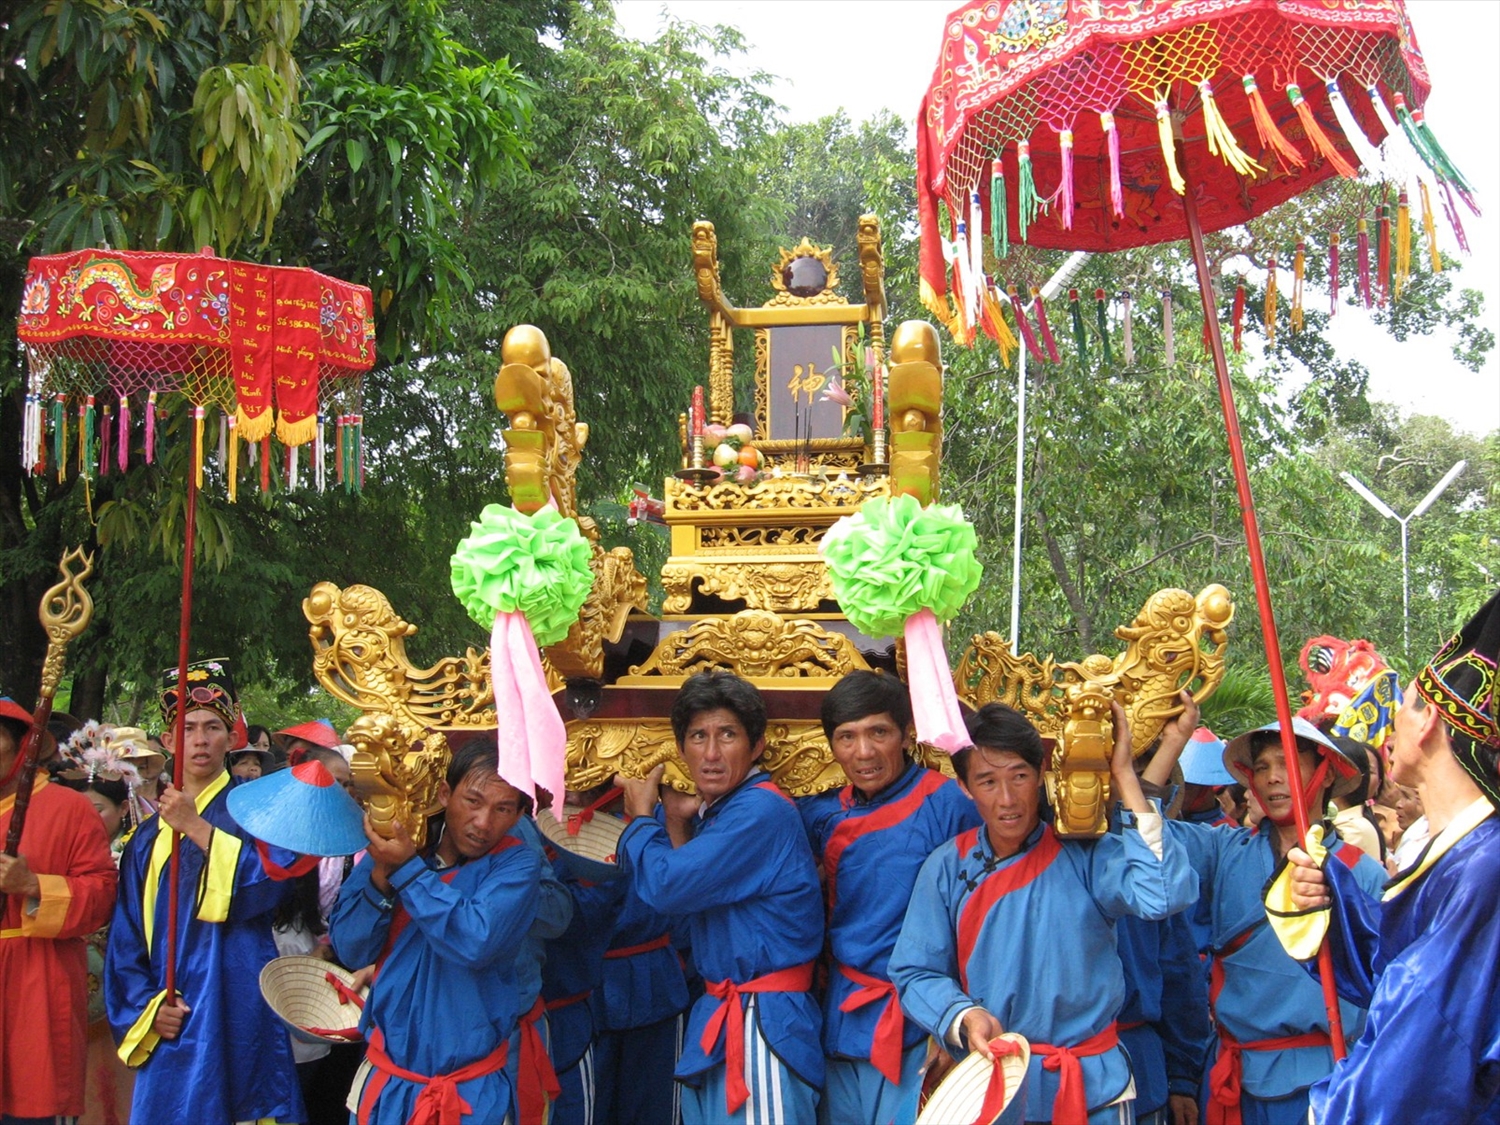 Lễ hội Dinh Thầy Thím được tổ chức tại thị xã La Gi (Bình Thuận) 